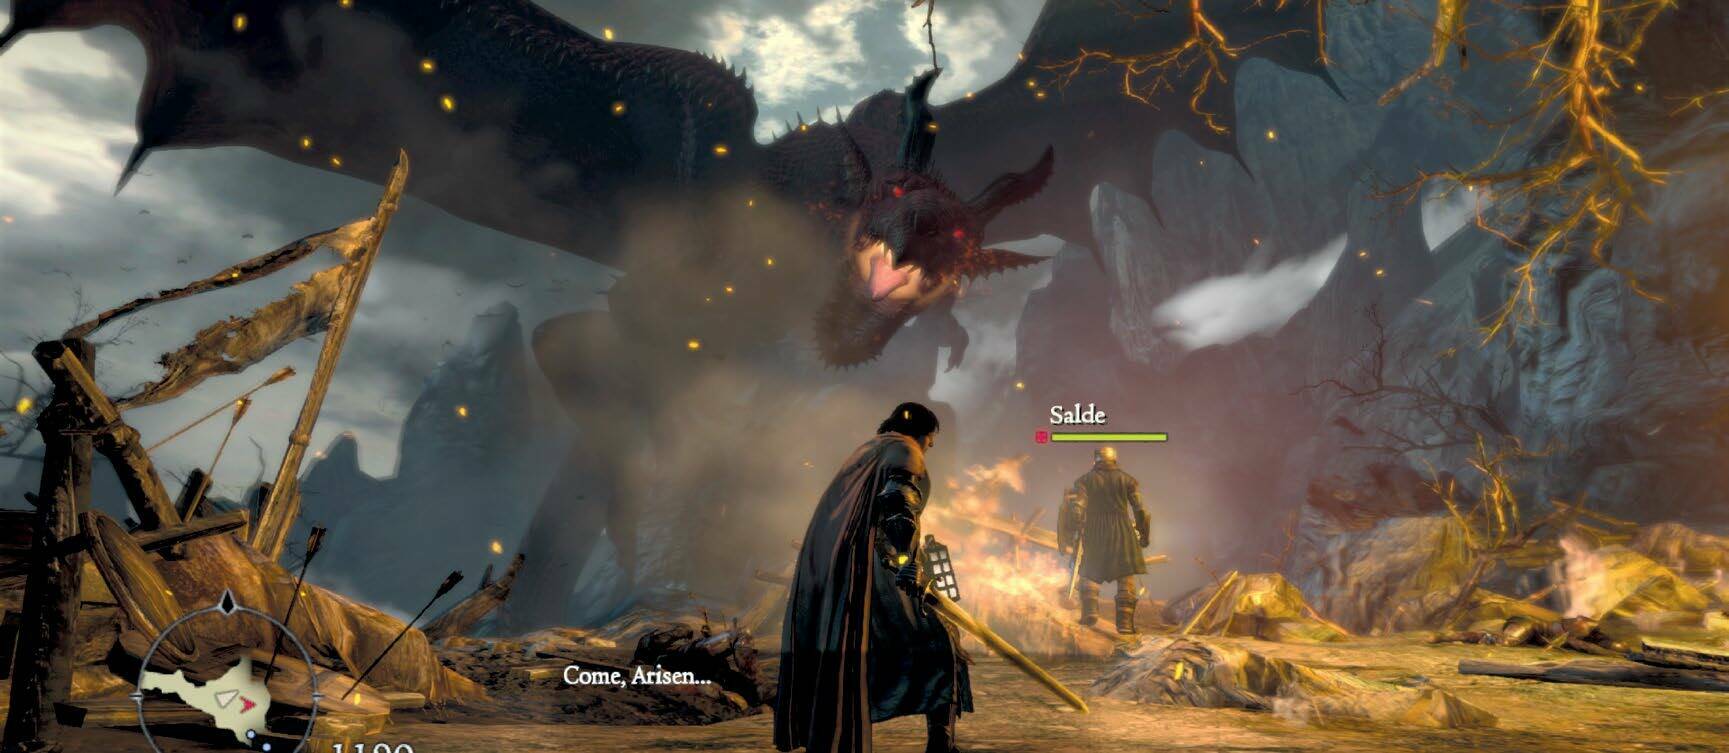 Capcom, 2012, Windows, Xbox 360 and PS3 2012 年，主機端發售了《龍之信條》，2013 年發售了黑暗覺醒版*，直到 2016 年，Capcom 才把該遊戲移植到 PC 平臺上 * 譯者注：《龍之信條：黑暗覺醒》（Dragon‘s Dogma: Dark Arisen）作為前作《龍之信條》的加強版本，遊戲中基本上除了將會收錄前作所有要素之外，還將會以全新場景『黑咒島』作為冒險新舞臺，並追加許多新的地圖、任務、武器、防具與動作，在之前備受玩家們好評的人物創建部分，也會追加更多新的細節讓玩家們來選用。